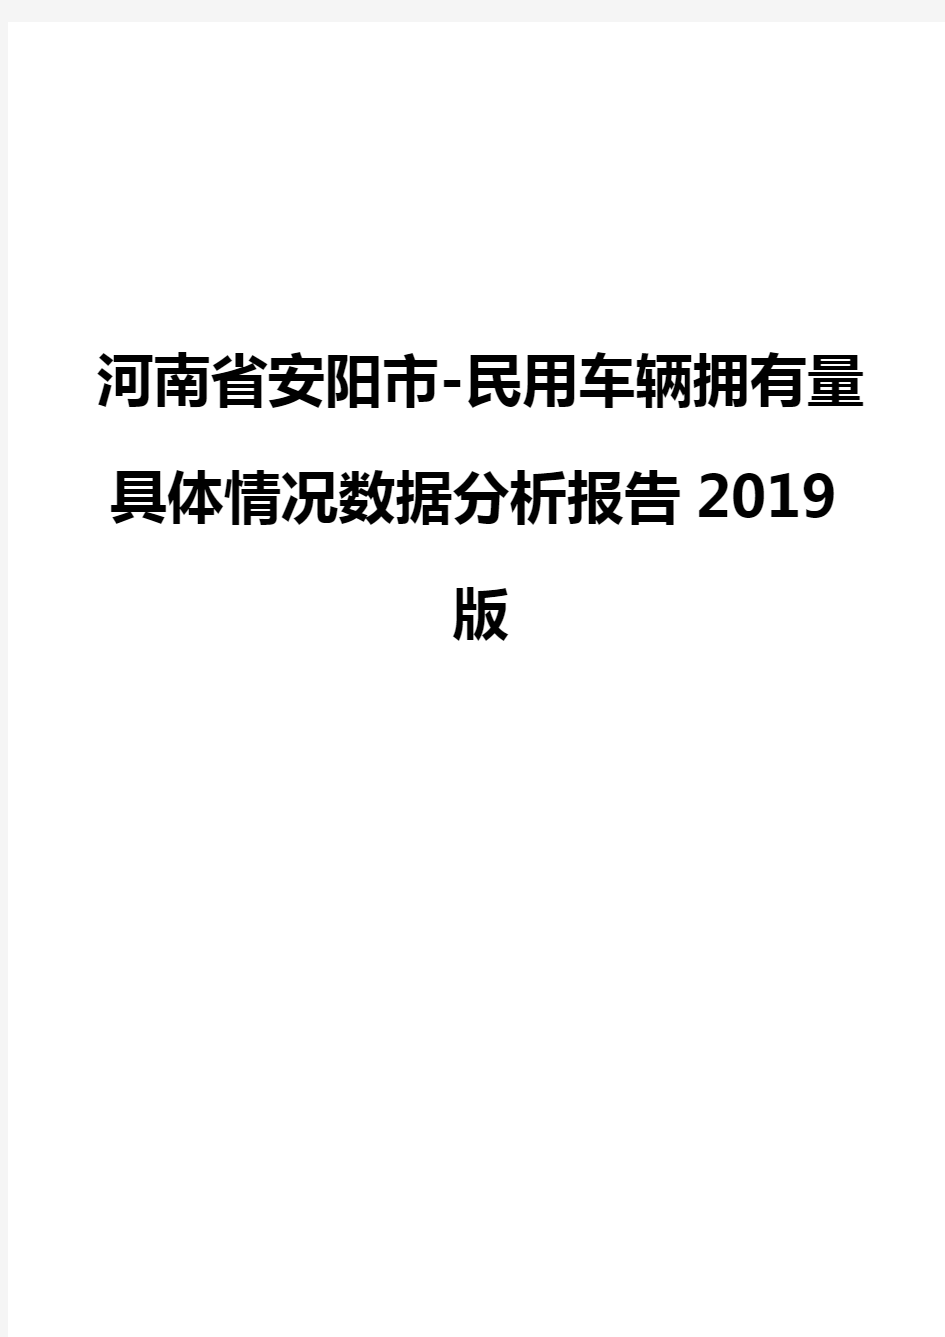 河南省安阳市-民用车辆拥有量具体情况数据分析报告2019版